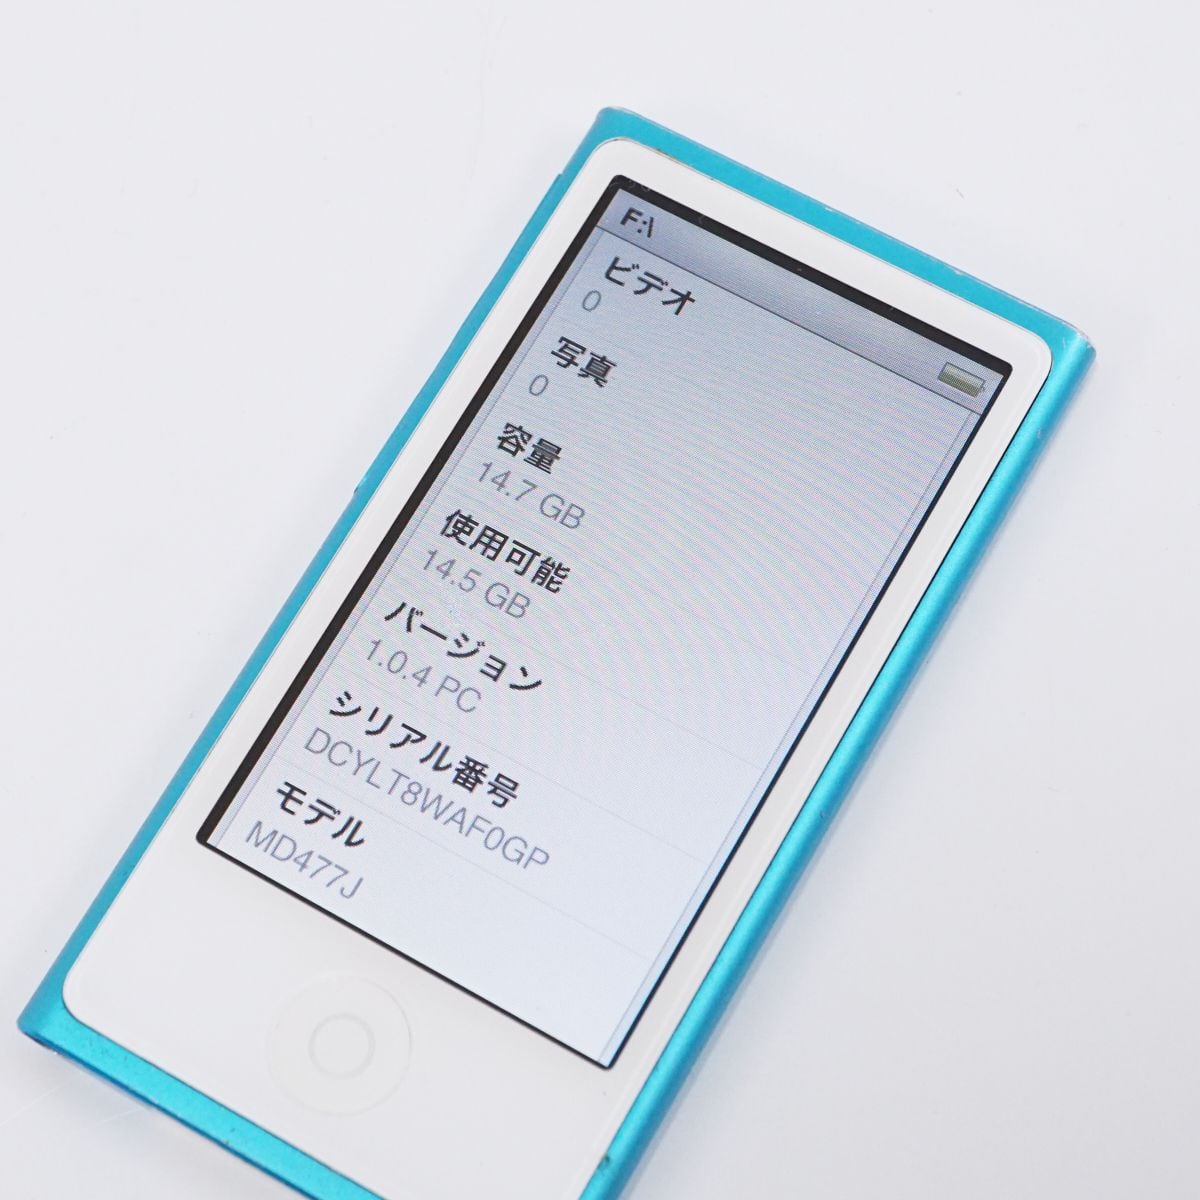 Apple アップル iPod nano 16GB USED品 第7世代 ブルー MD477J A1446